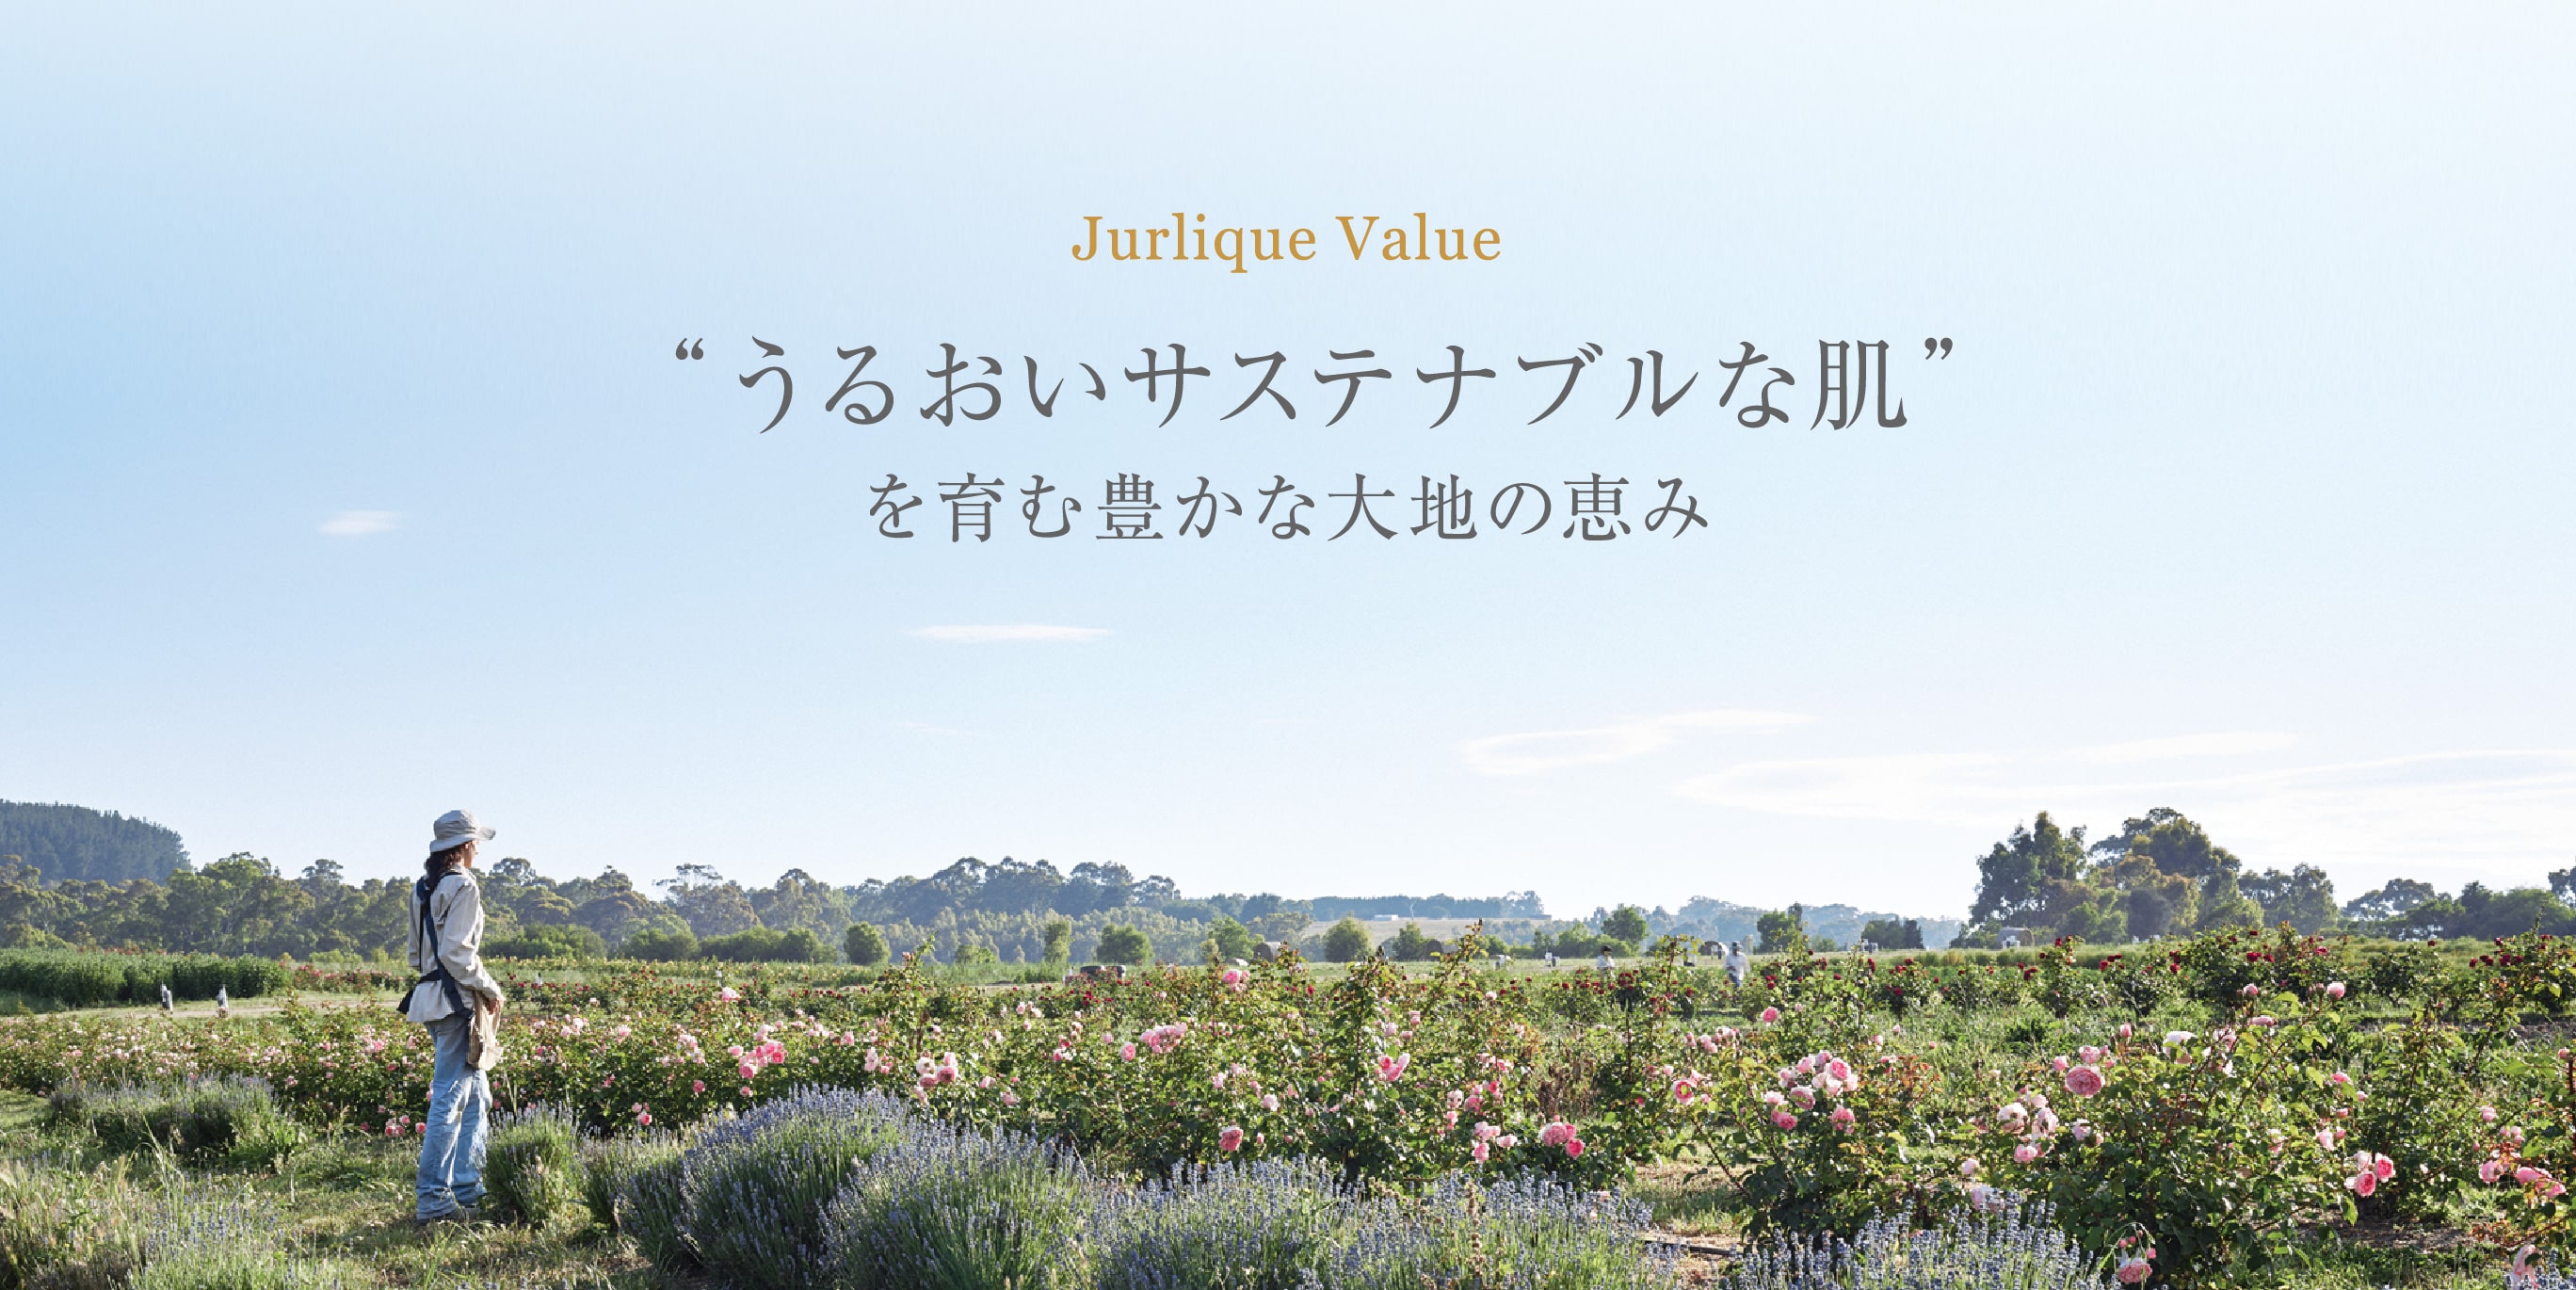 Jurlique Value “うるおいサステナブルな肌”を育む豊かな大地の恵み